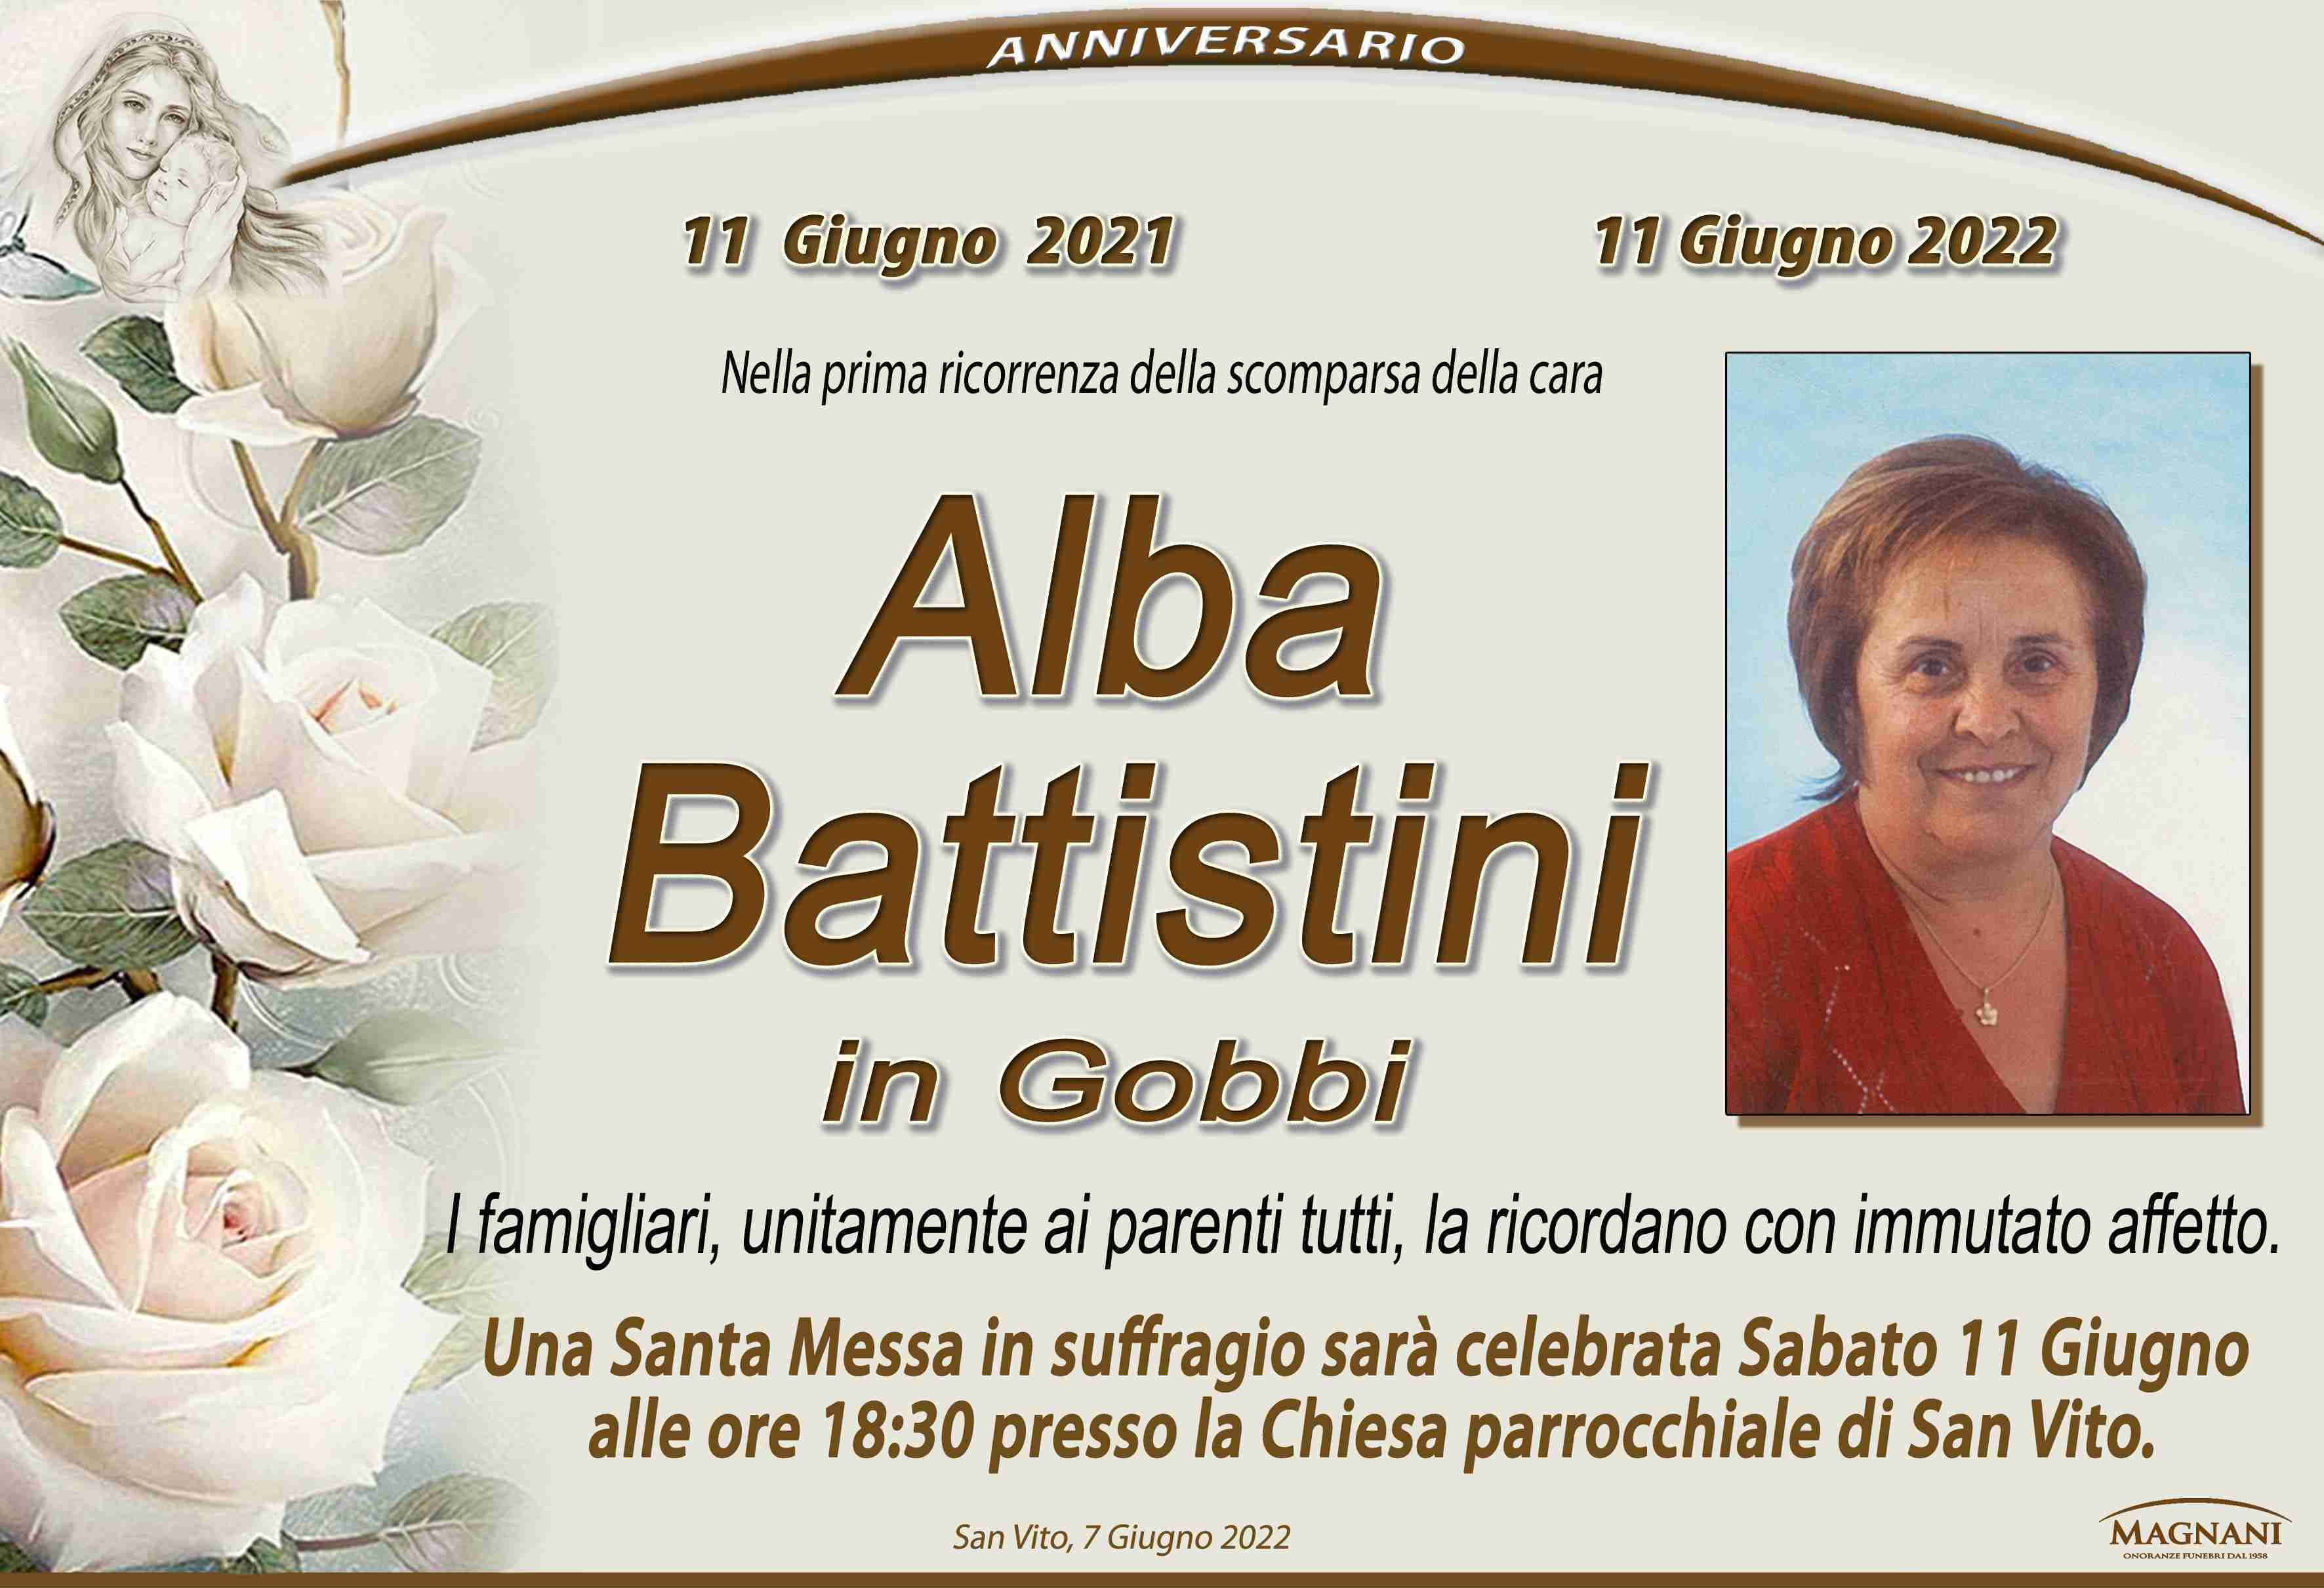 Alba Battistini